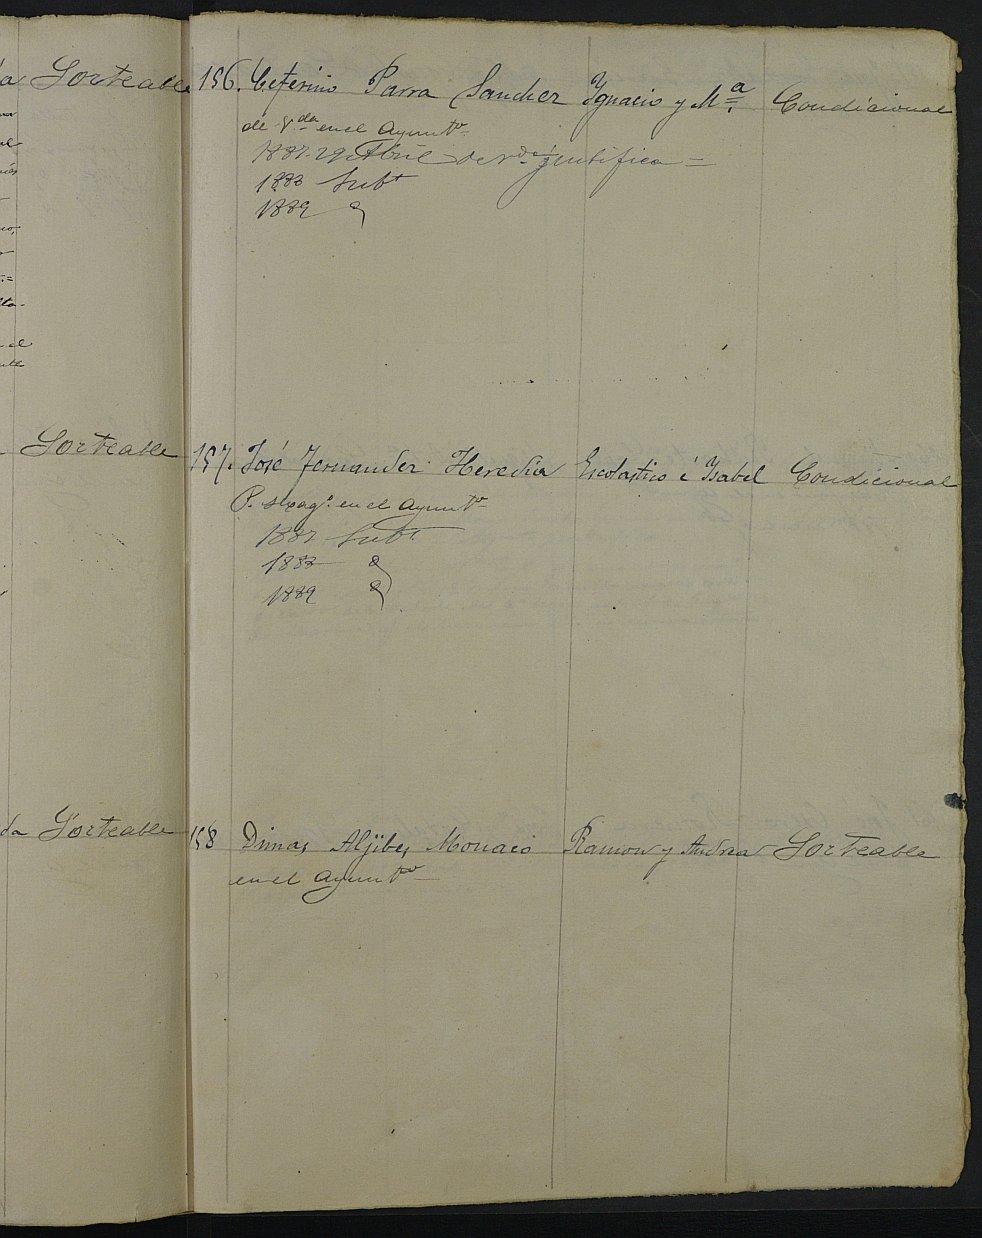 Relación de individuos declarados soldados e ingresados en Caja de la Sección 1ª del Ayuntamiento de Cartagena de 1886.